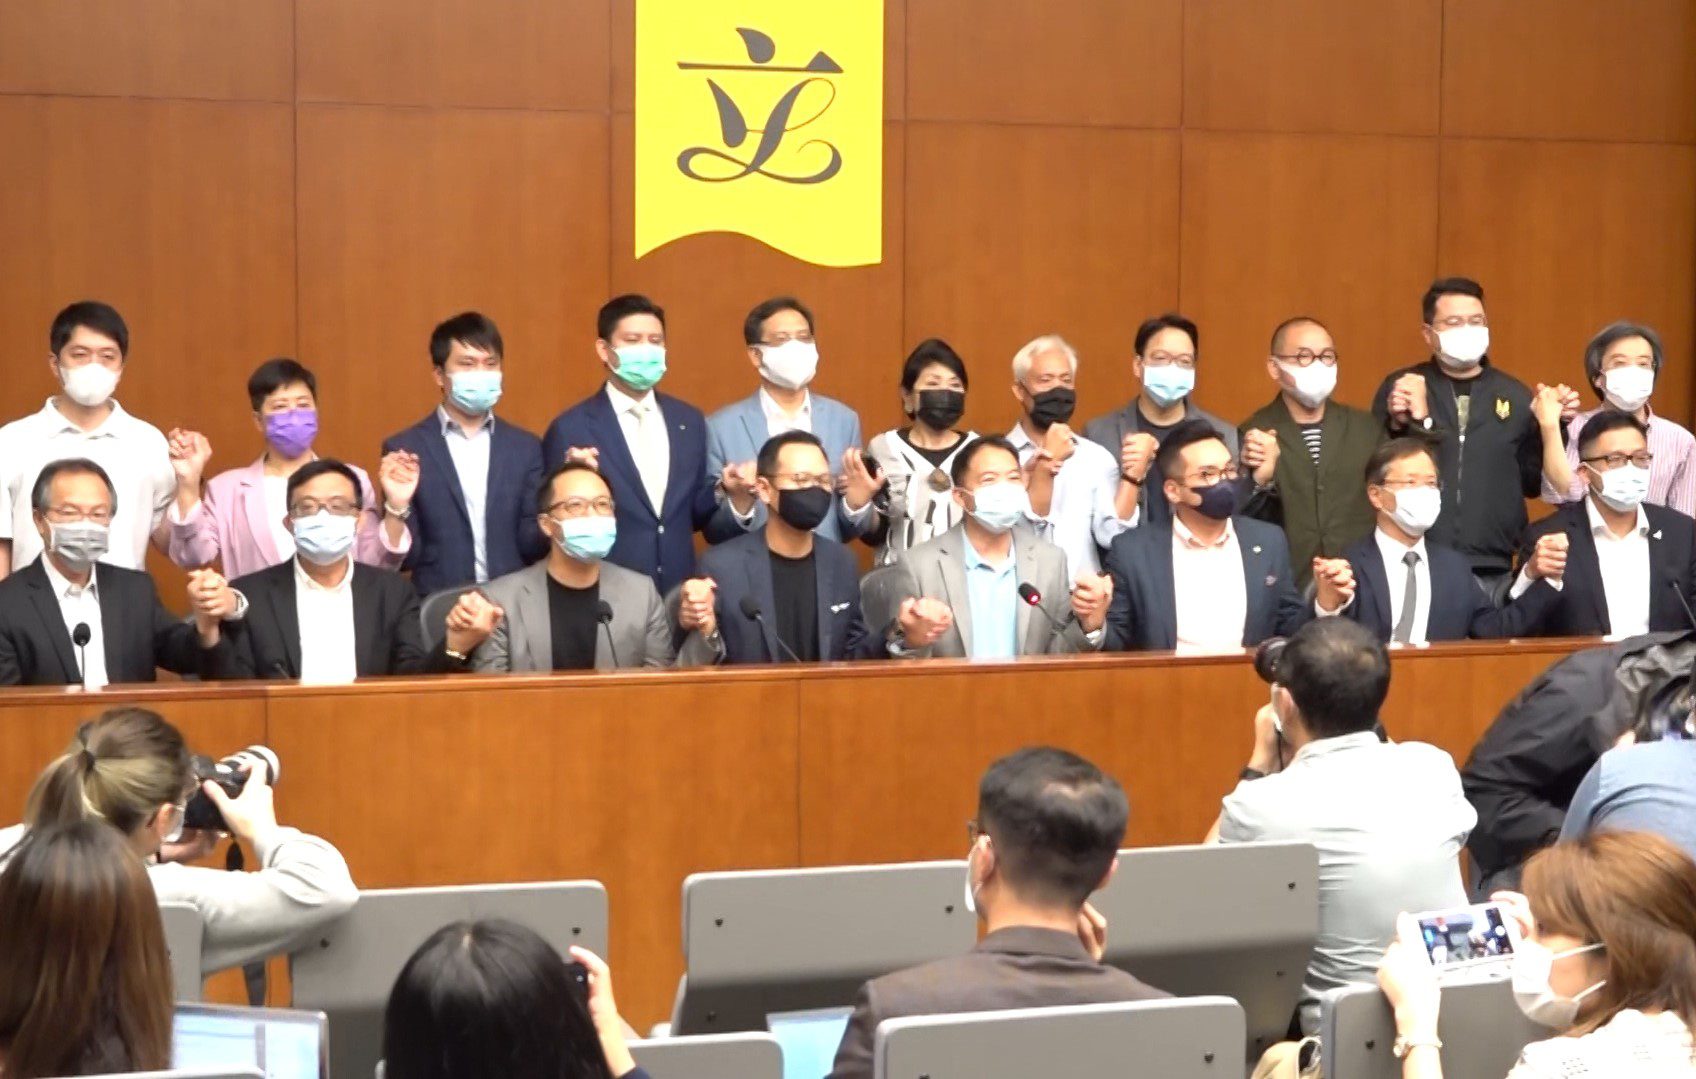 Renuncia en masa de diputados prodemocracia de Hong Kong